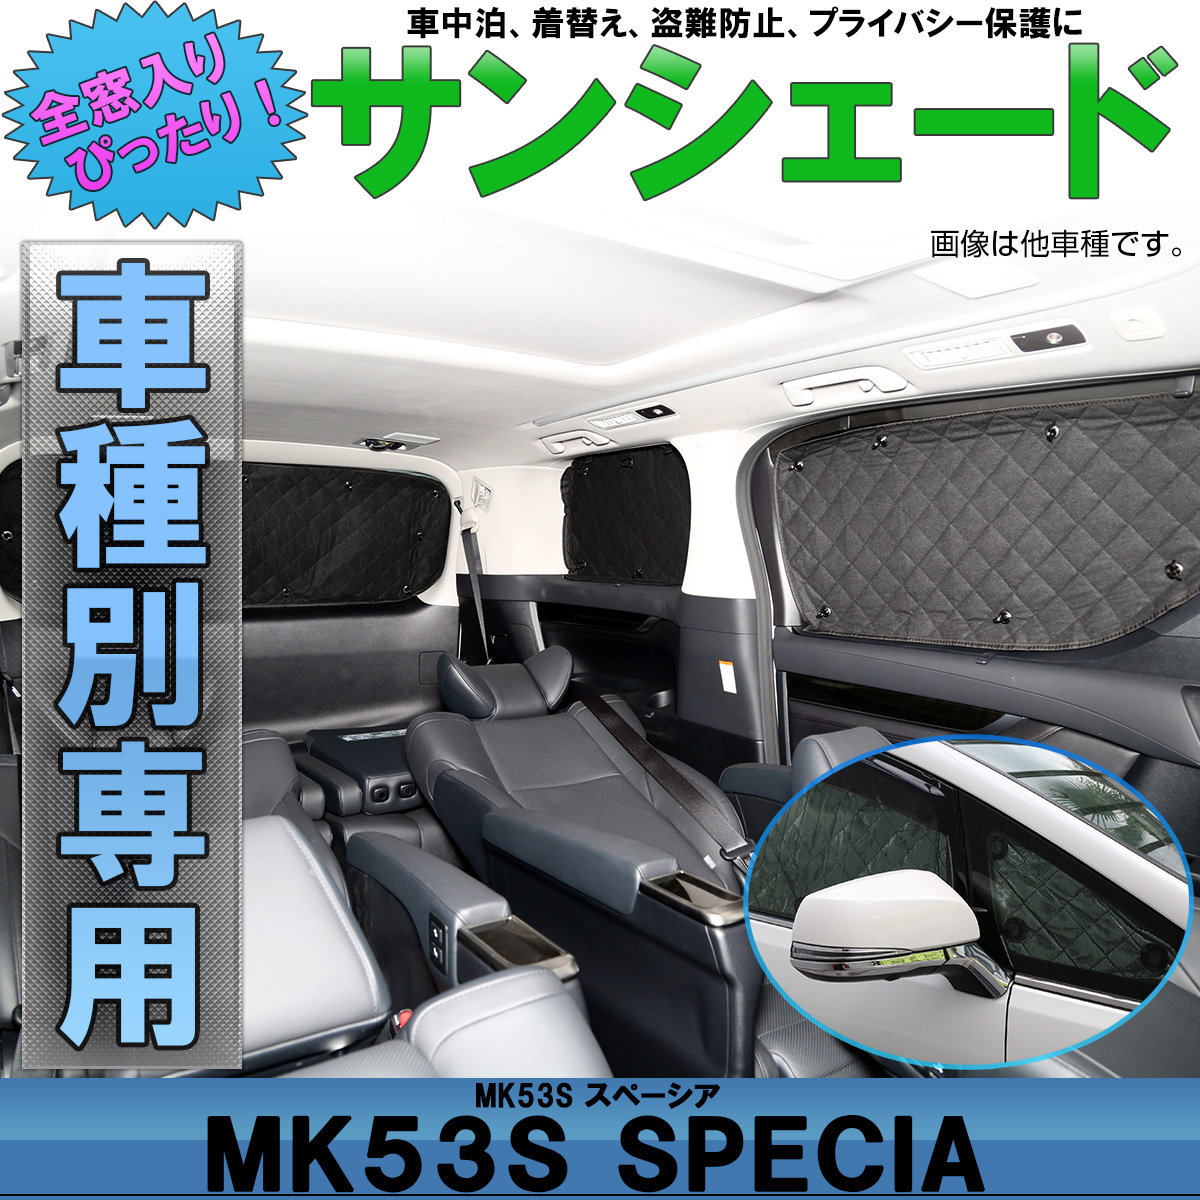 サンシェード Mk53s スペーシア Spacia カスタム スペーシア ギア 全窓用 専用設計 5層構造 ブラックメッシュ 車中泊 S 5